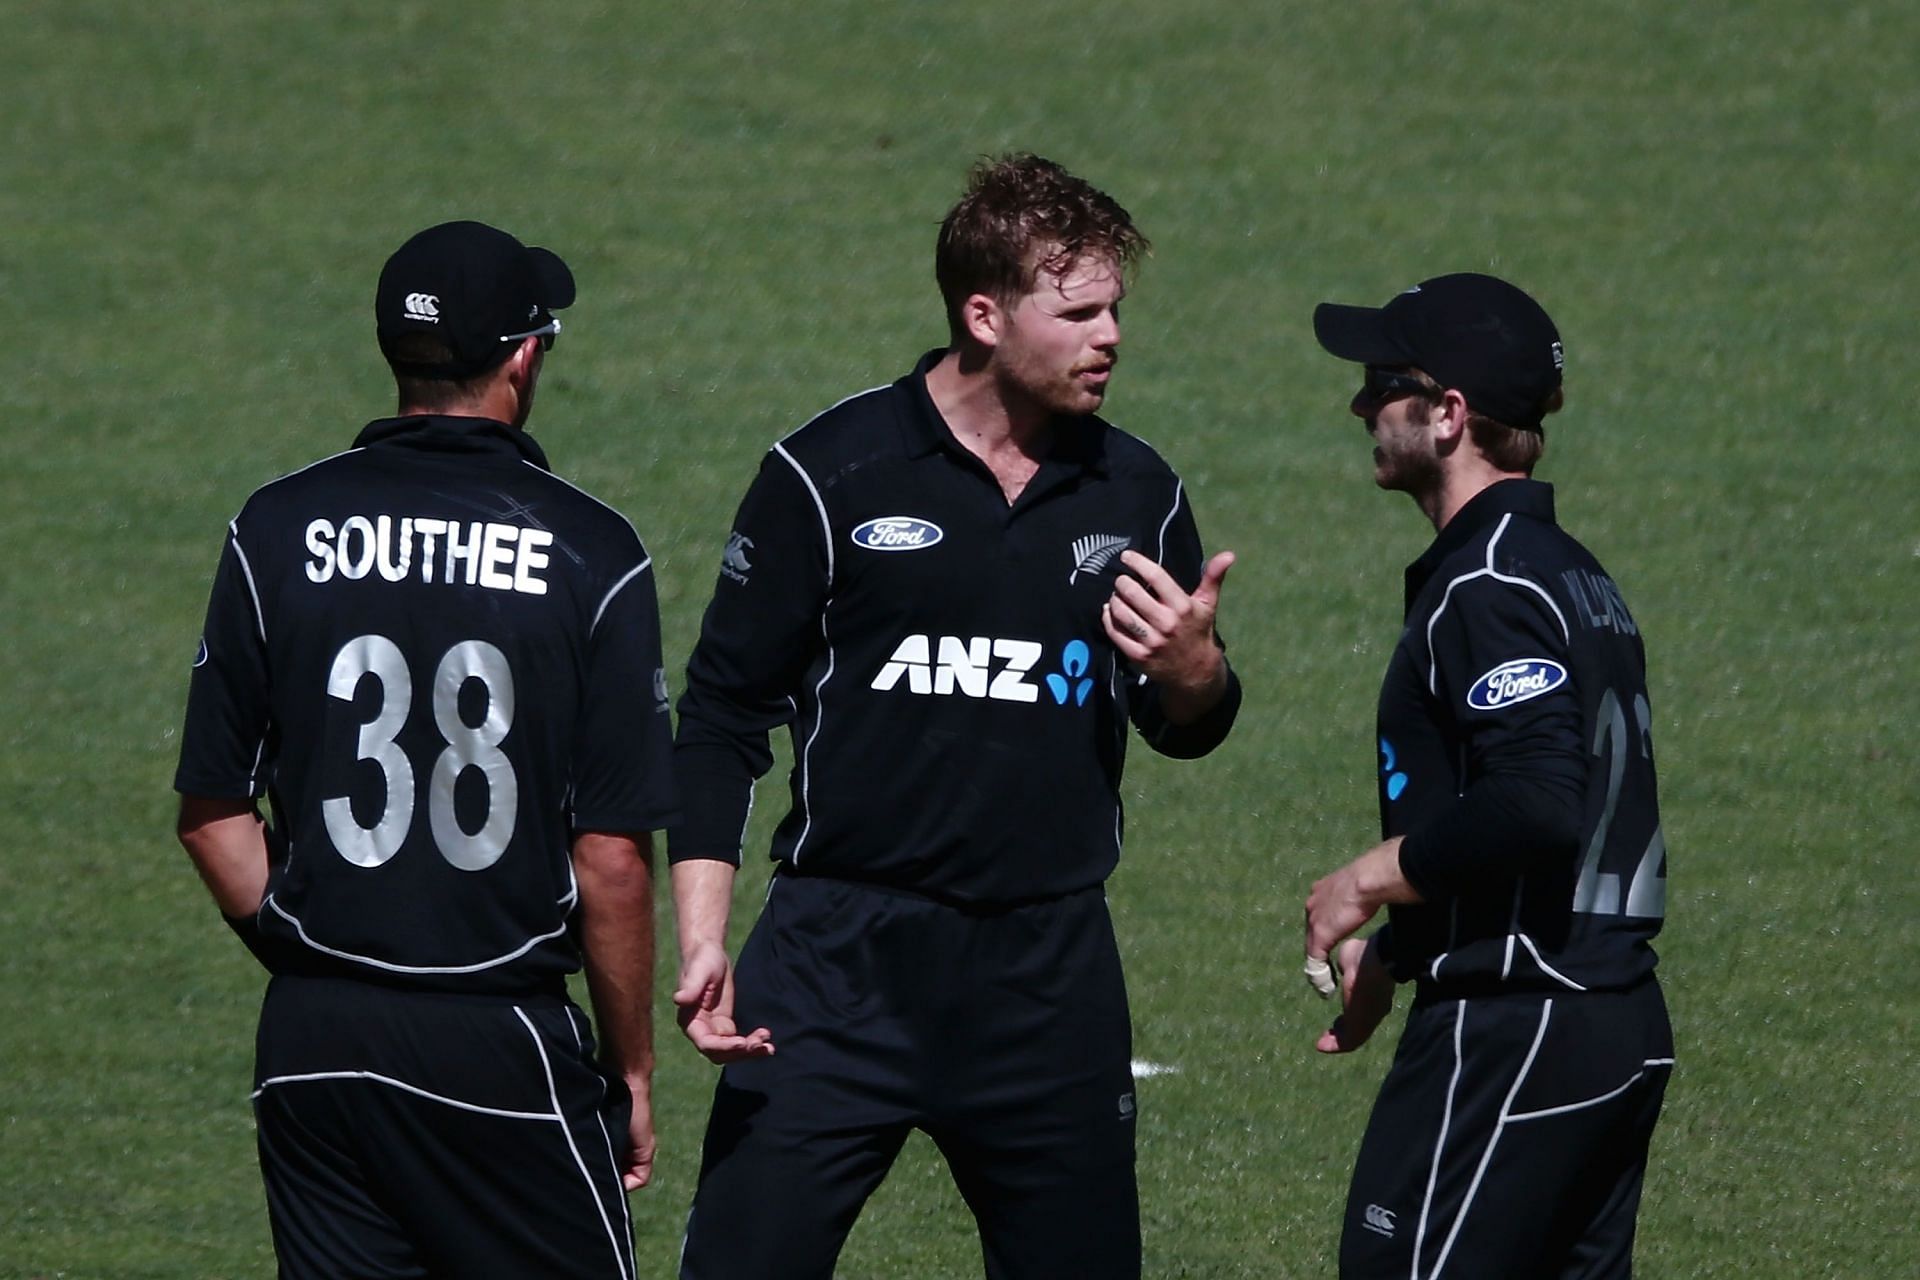 New Zealand v Australia - 1st ODI